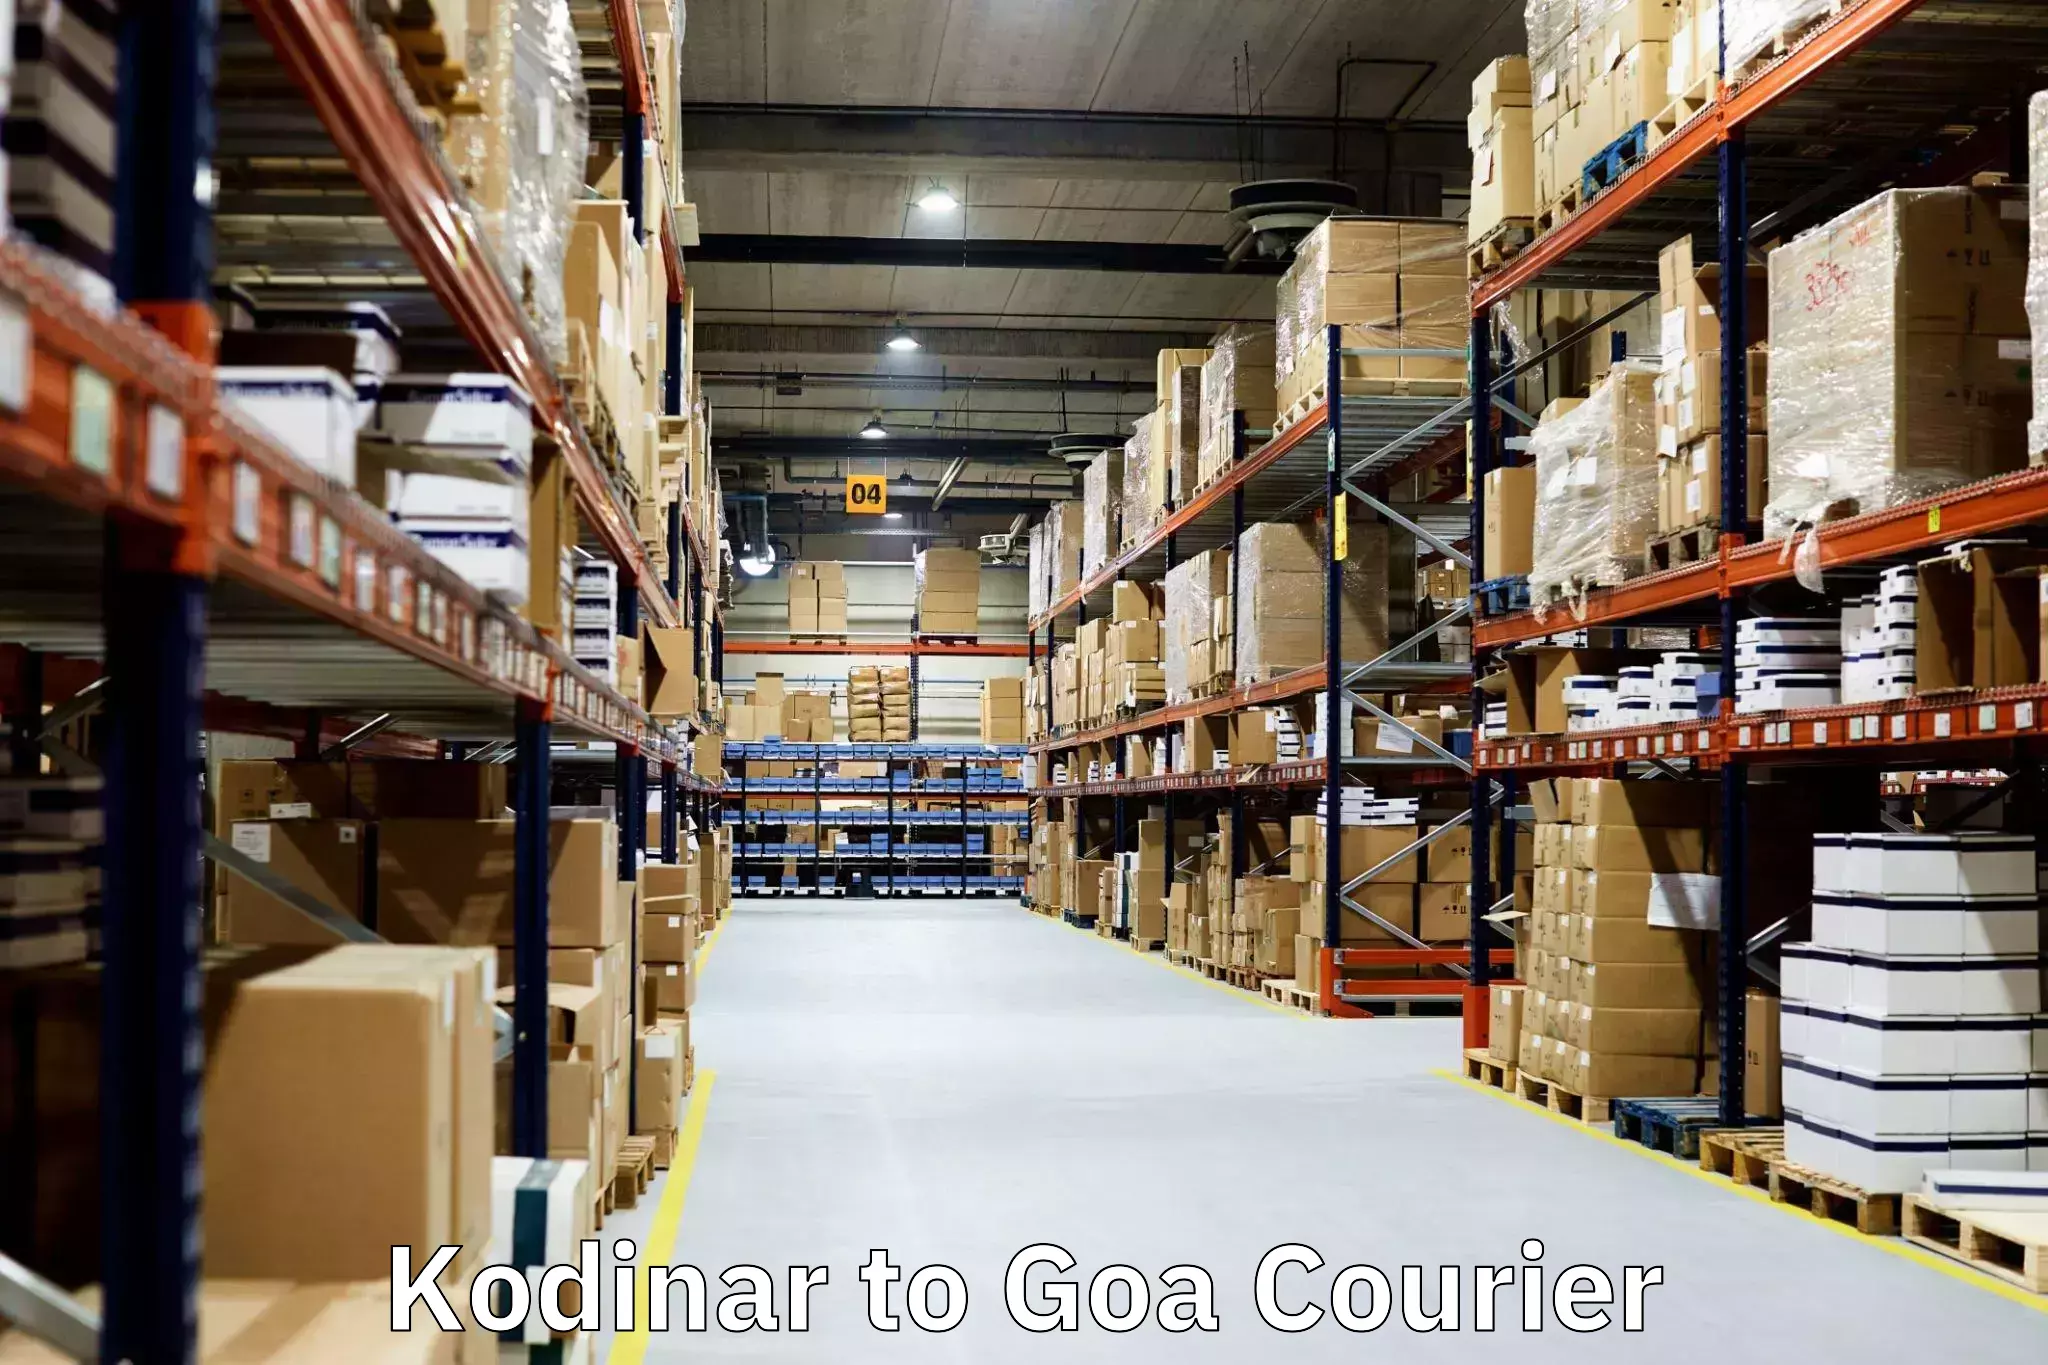 Reliable movers Kodinar to Goa